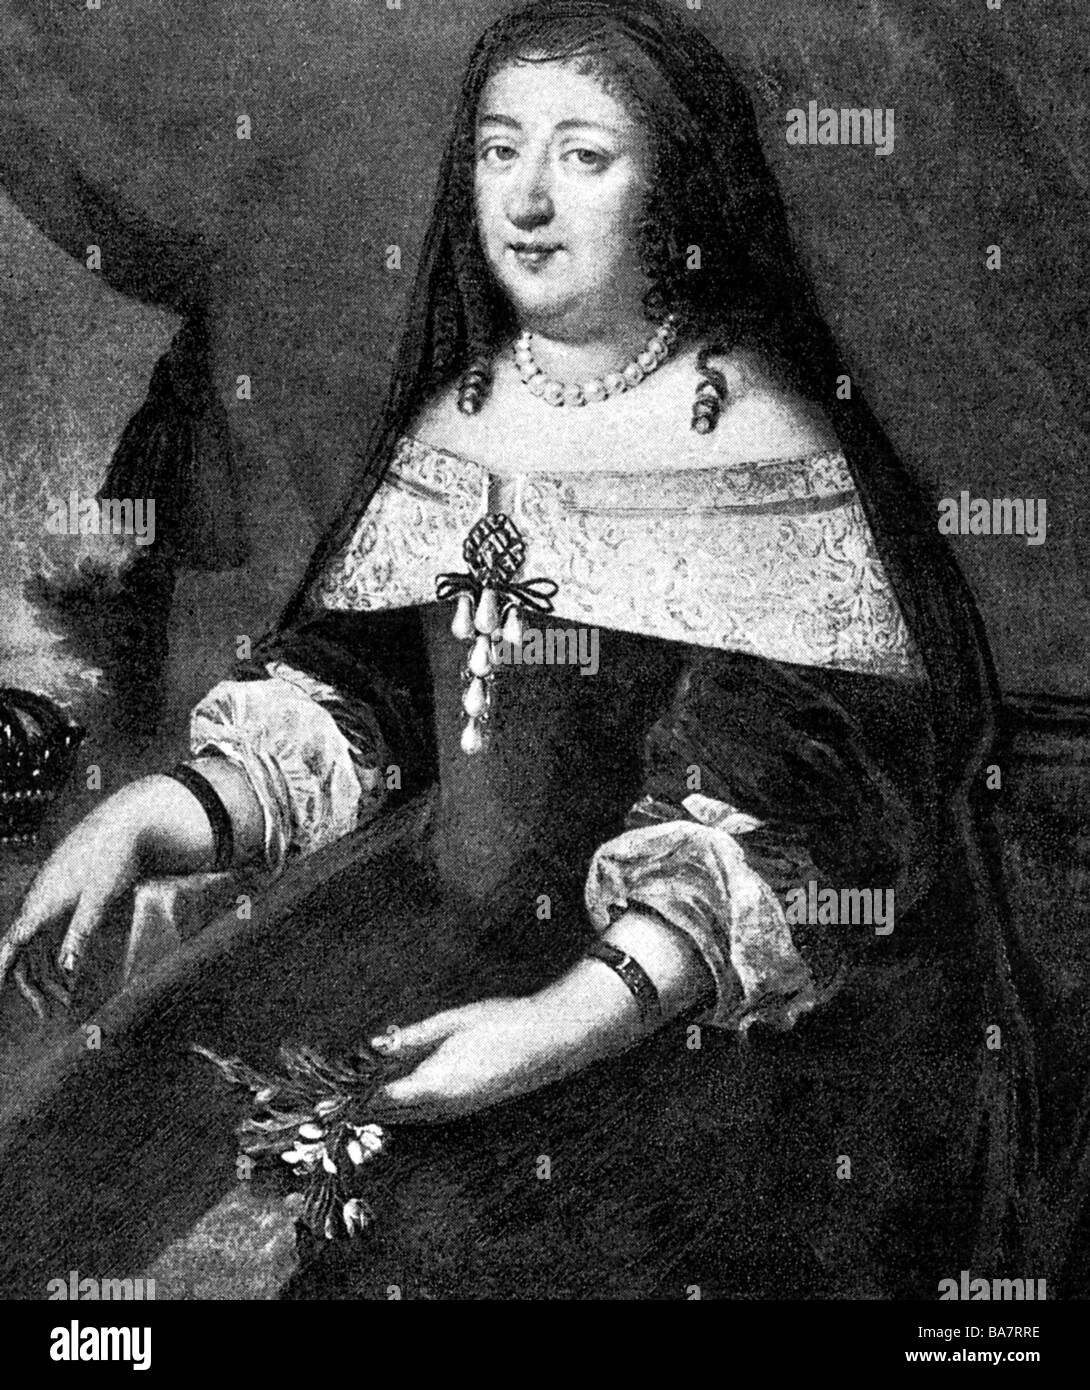 Anne d'Autriche, 22.9.1601 - 20.1.1666, reine de France depuis 1615, épouse de Louis XIII, demi-longueur, graphique après peinture par Pierre Mignard, auteur de l'artiste n'a pas à être effacée Banque D'Images